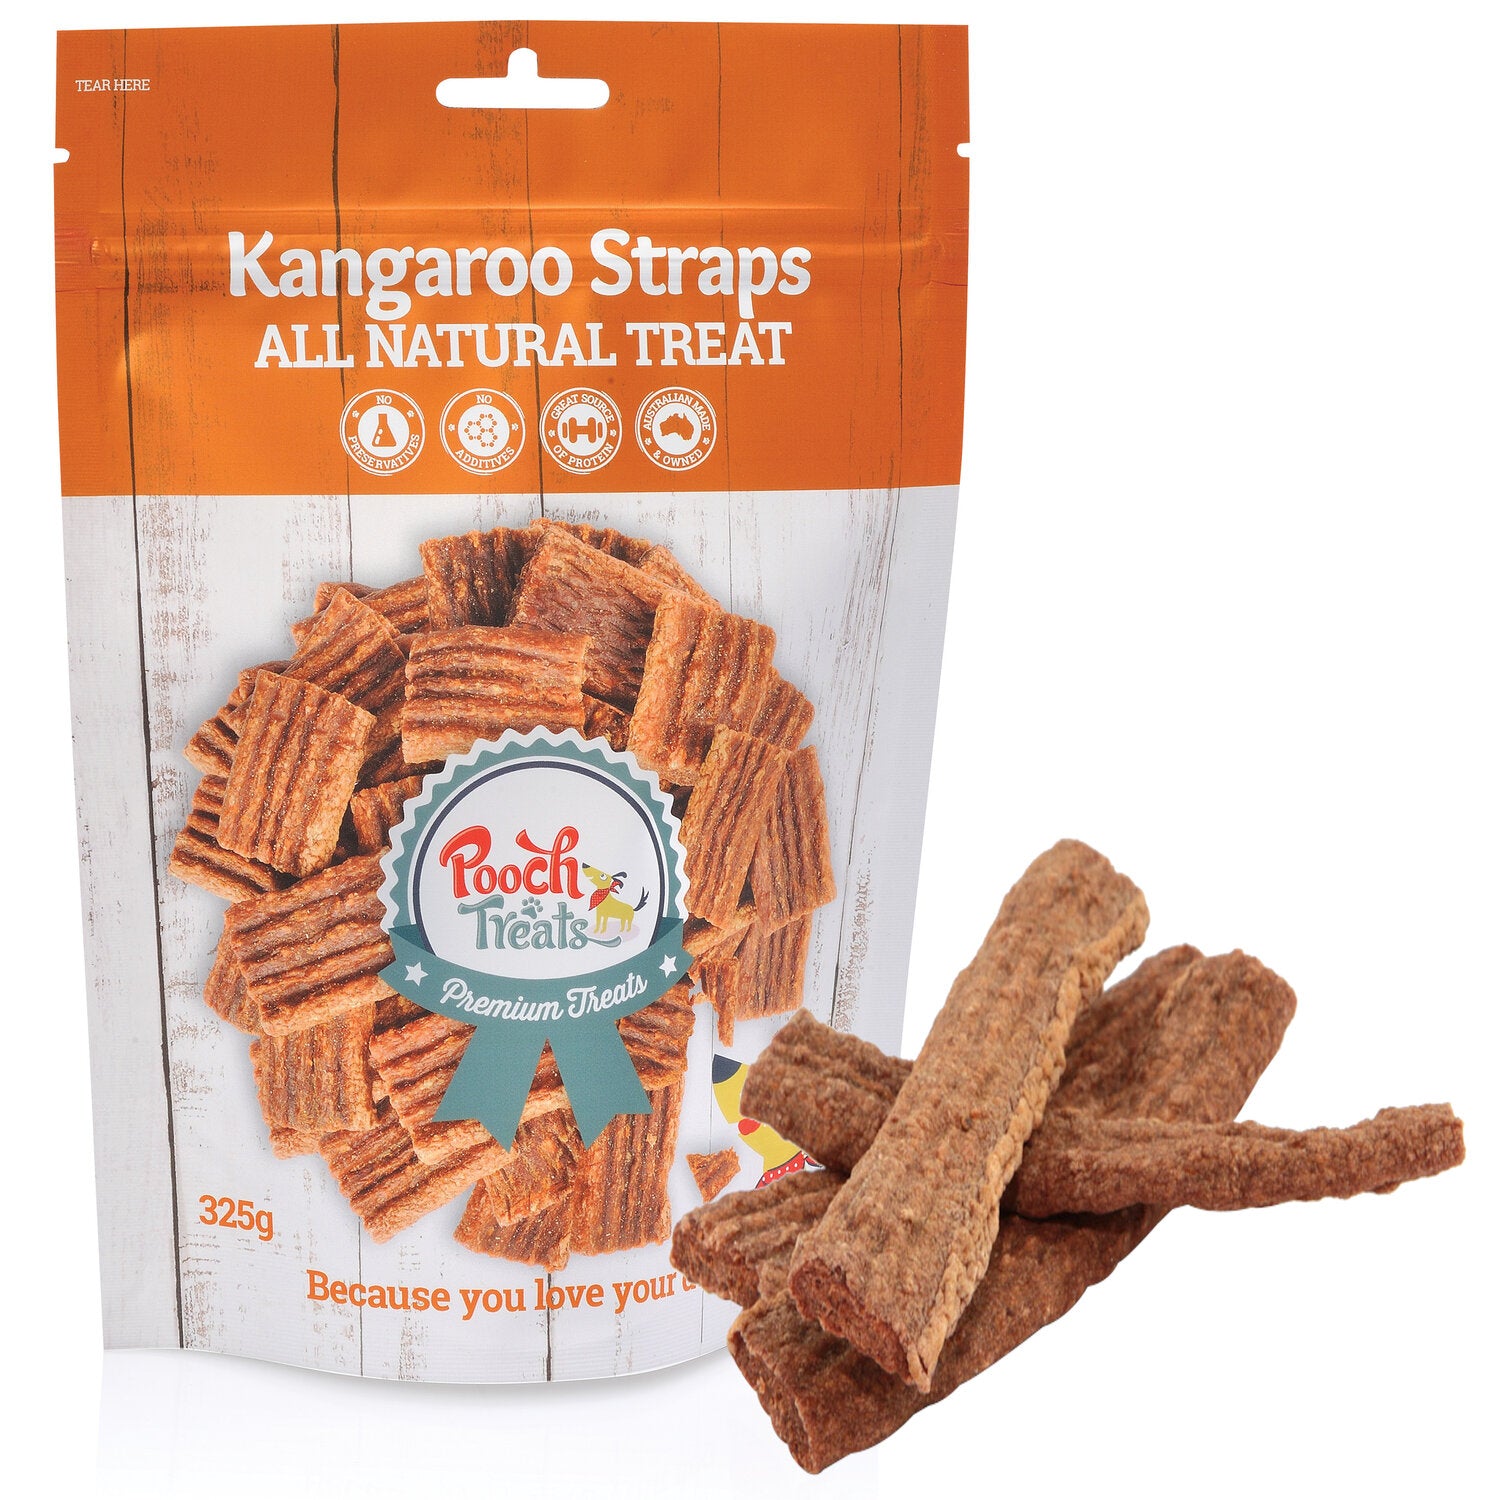 Kangaroo Straps (325g)